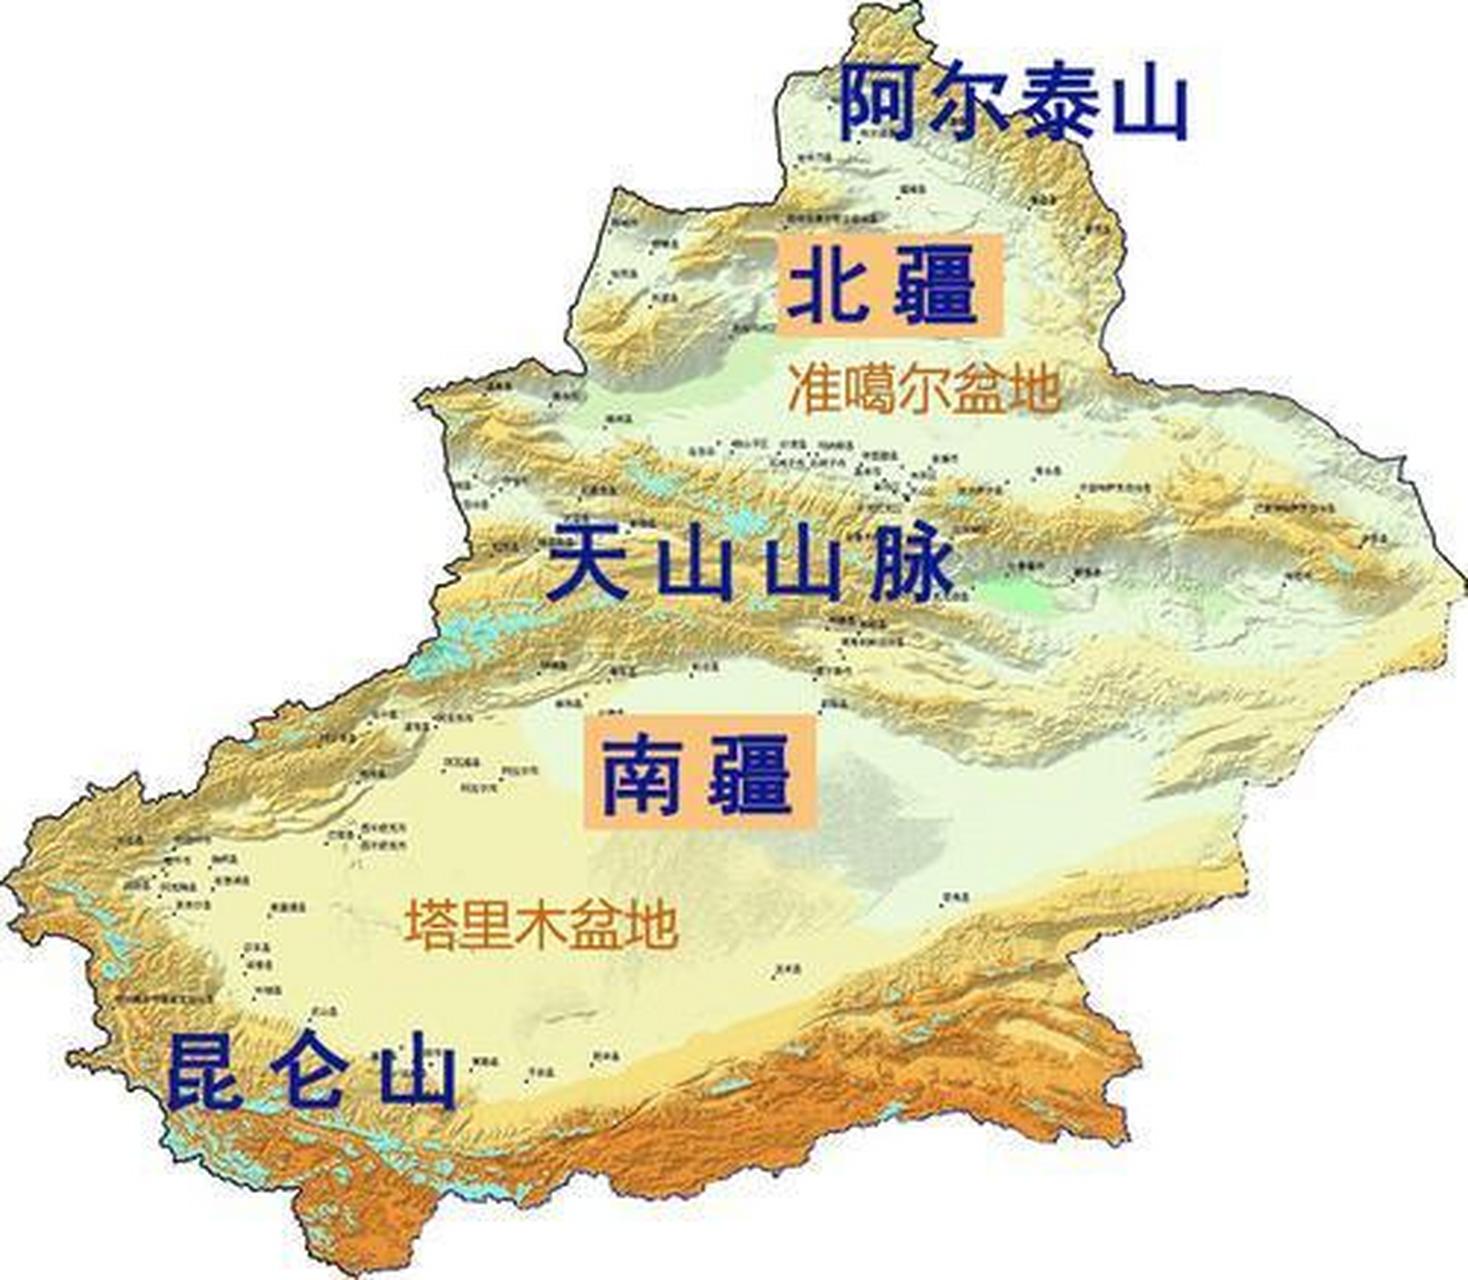 三山夹两盆 #文化地理#  "三山夹两盆"是新疆的地形特征,山脉与盆地